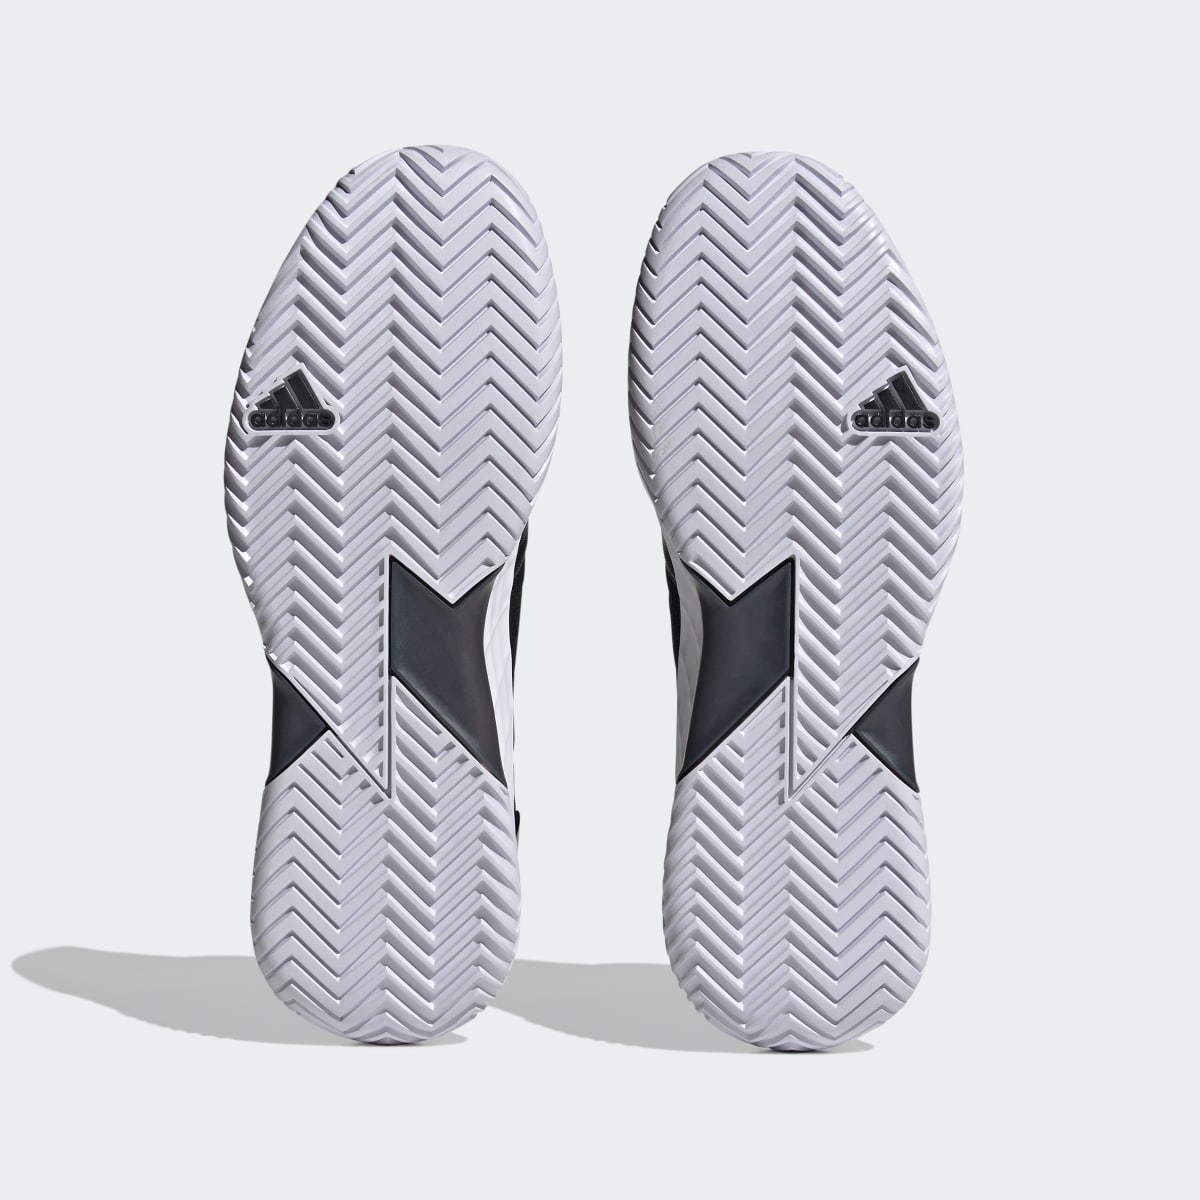 Adidas Adizero Ubersonic 4.1 Tennis Shoes. 7